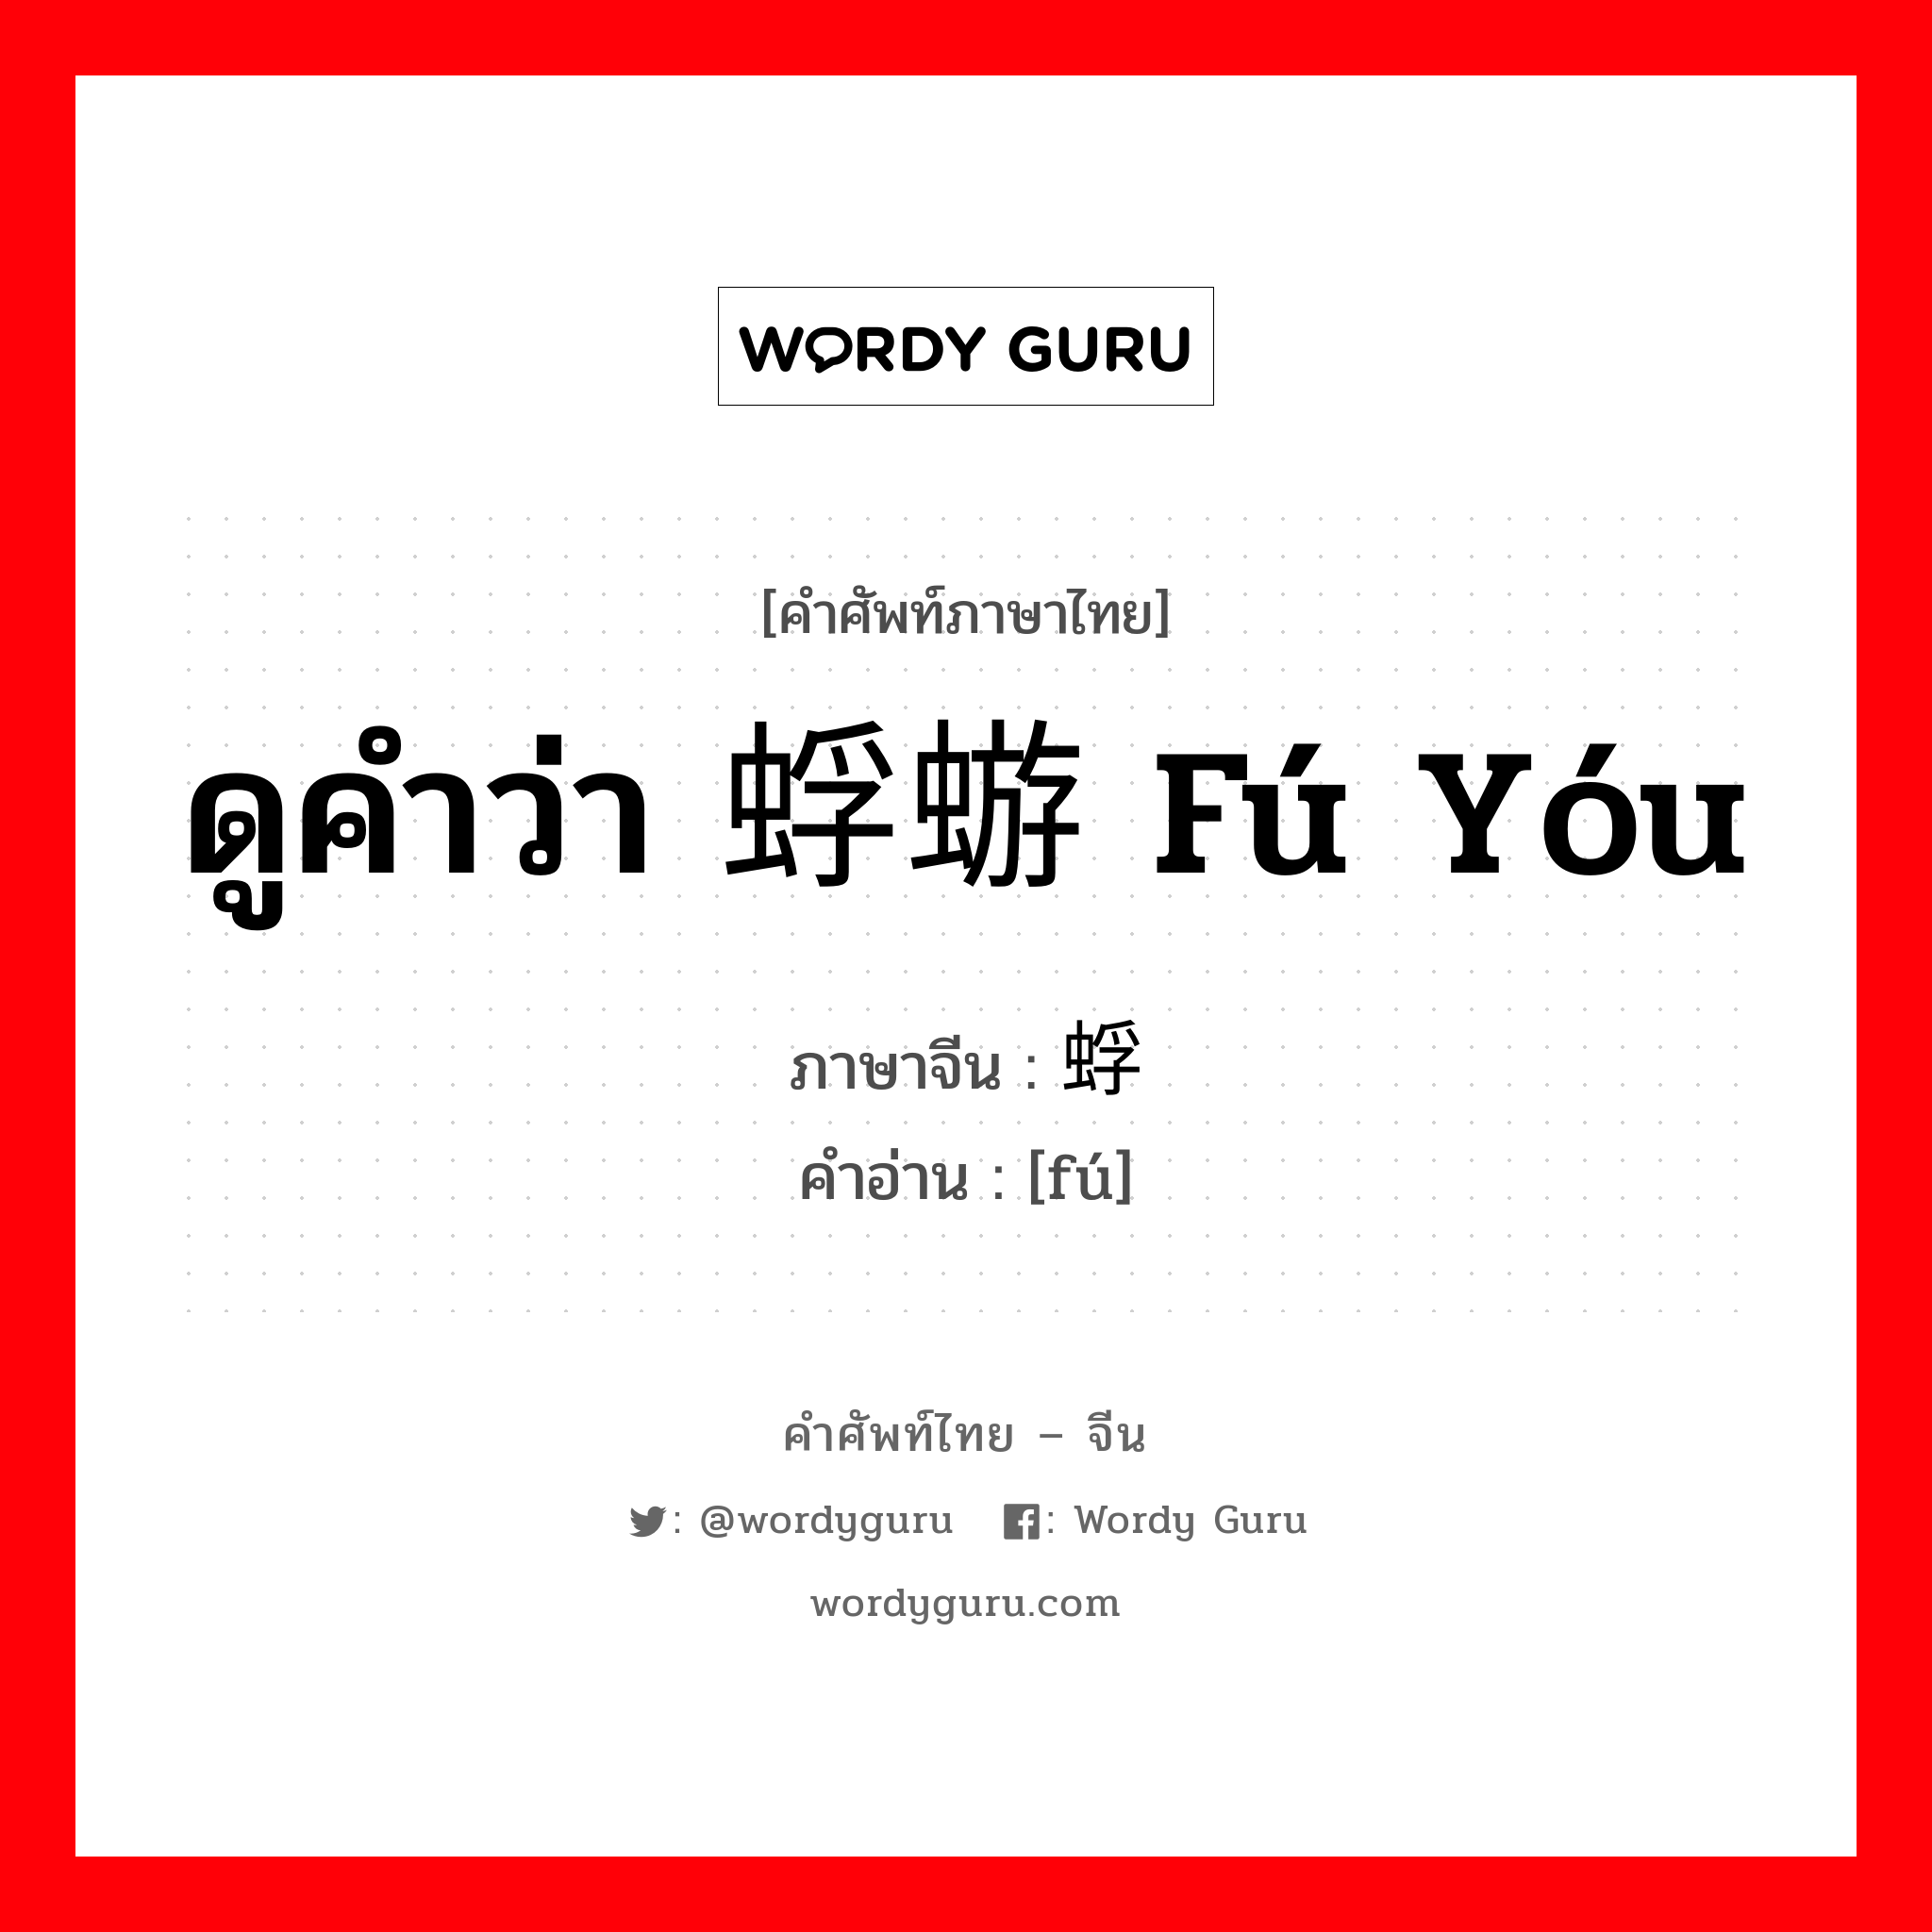 ดูคำว่า 蜉蝣 fú yóu ภาษาจีนคืออะไร, คำศัพท์ภาษาไทย - จีน ดูคำว่า 蜉蝣 fú yóu ภาษาจีน 蜉 คำอ่าน [fú]